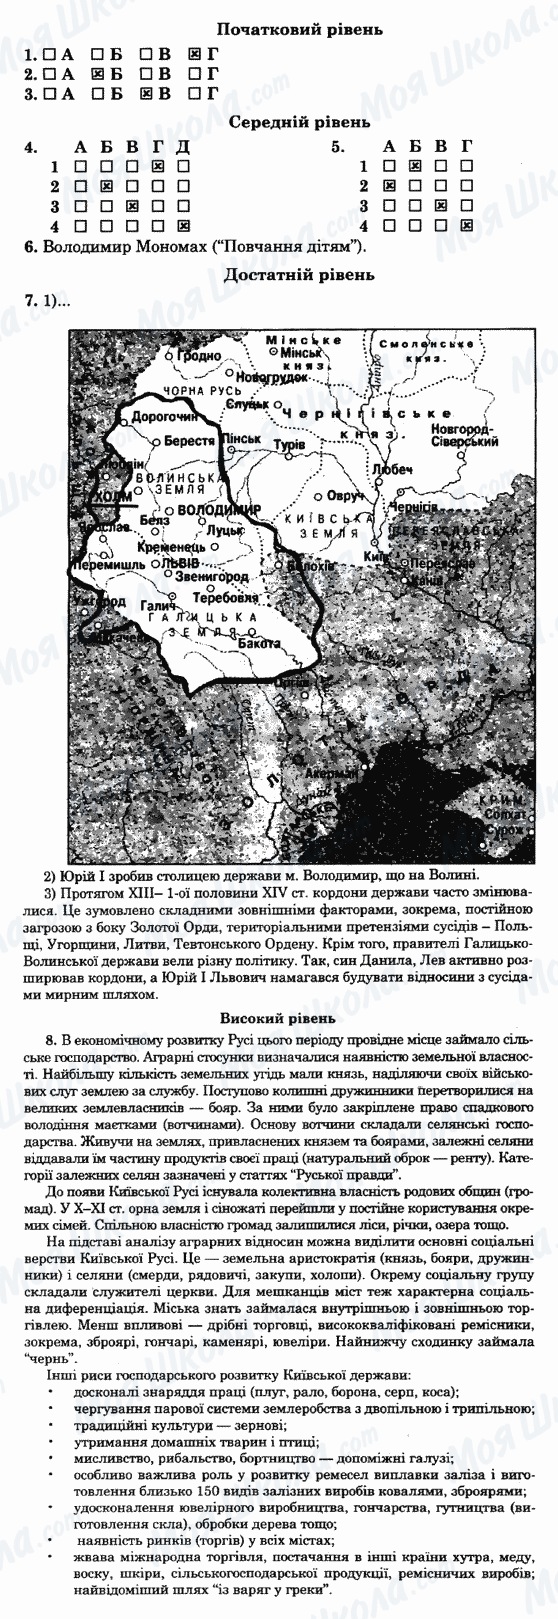 ГДЗ Історія України 7 клас сторінка 19-варіант